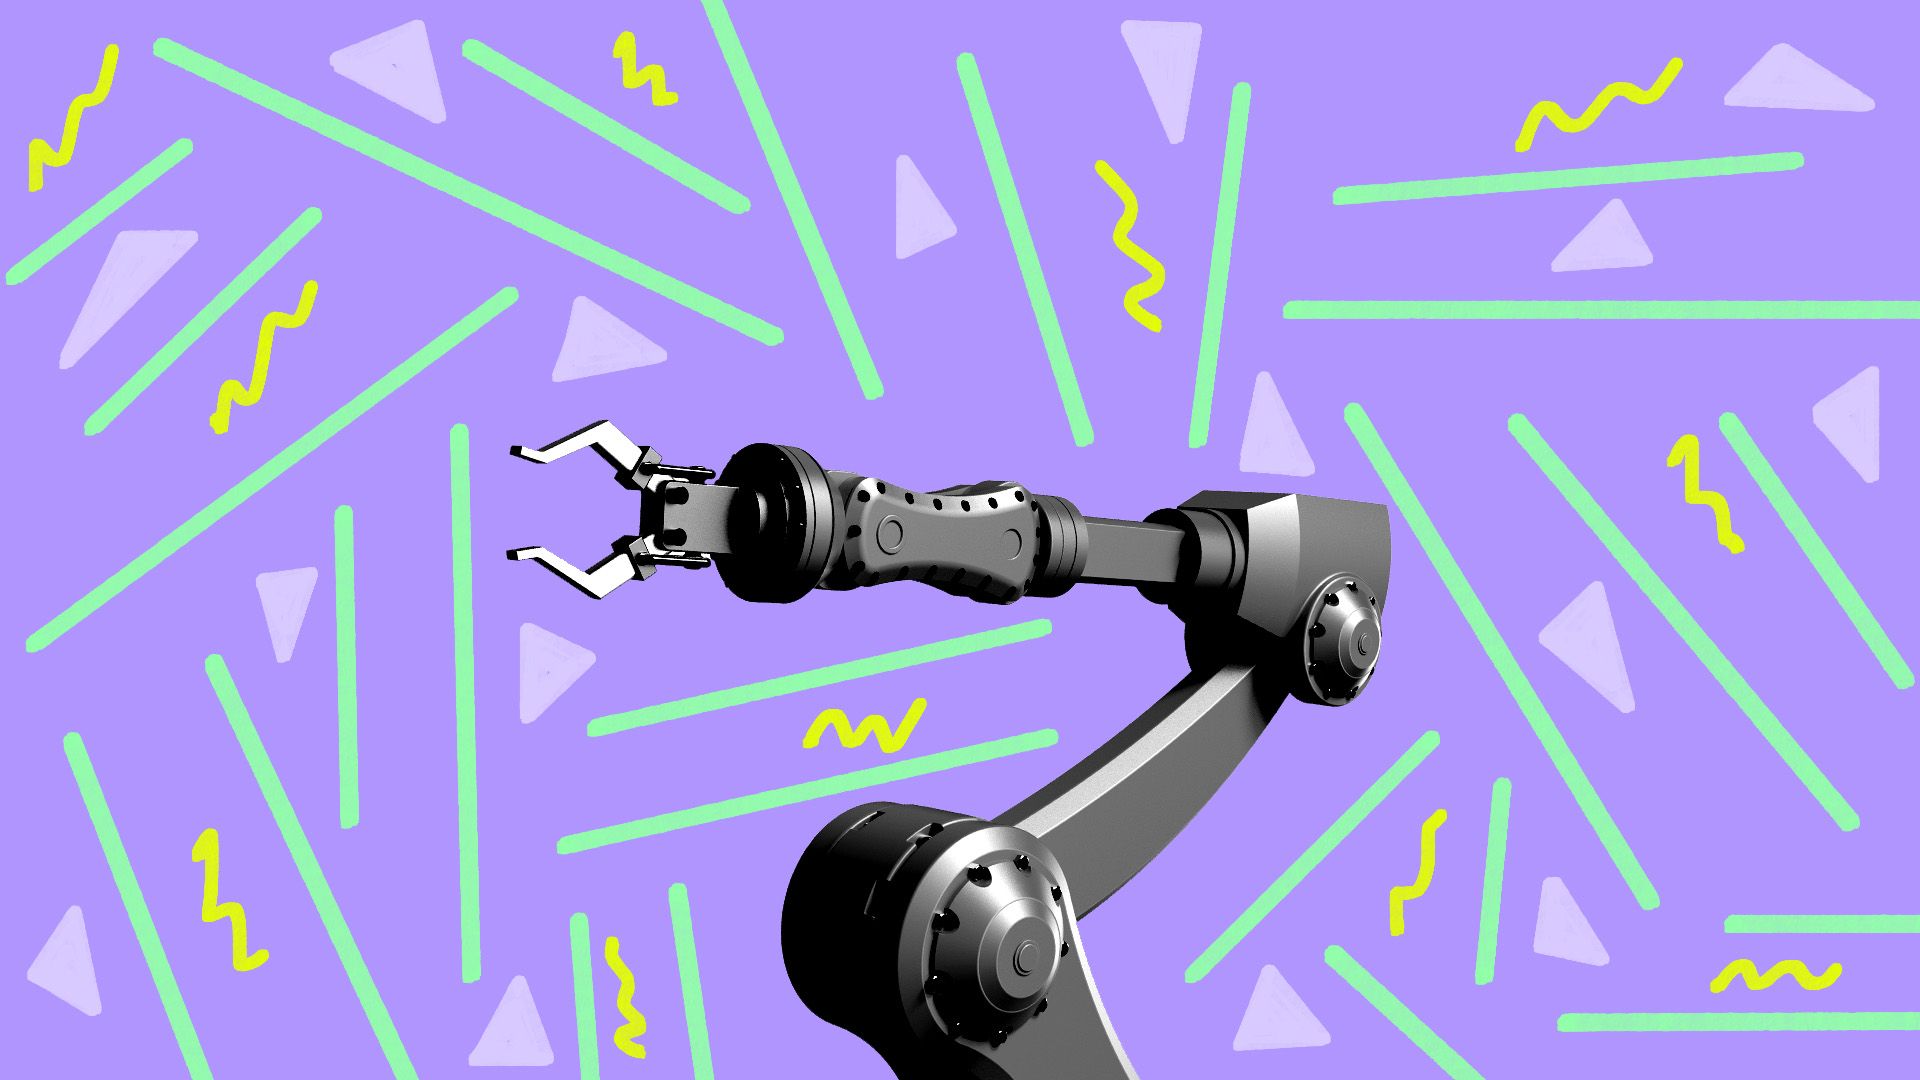 A mechanical arm